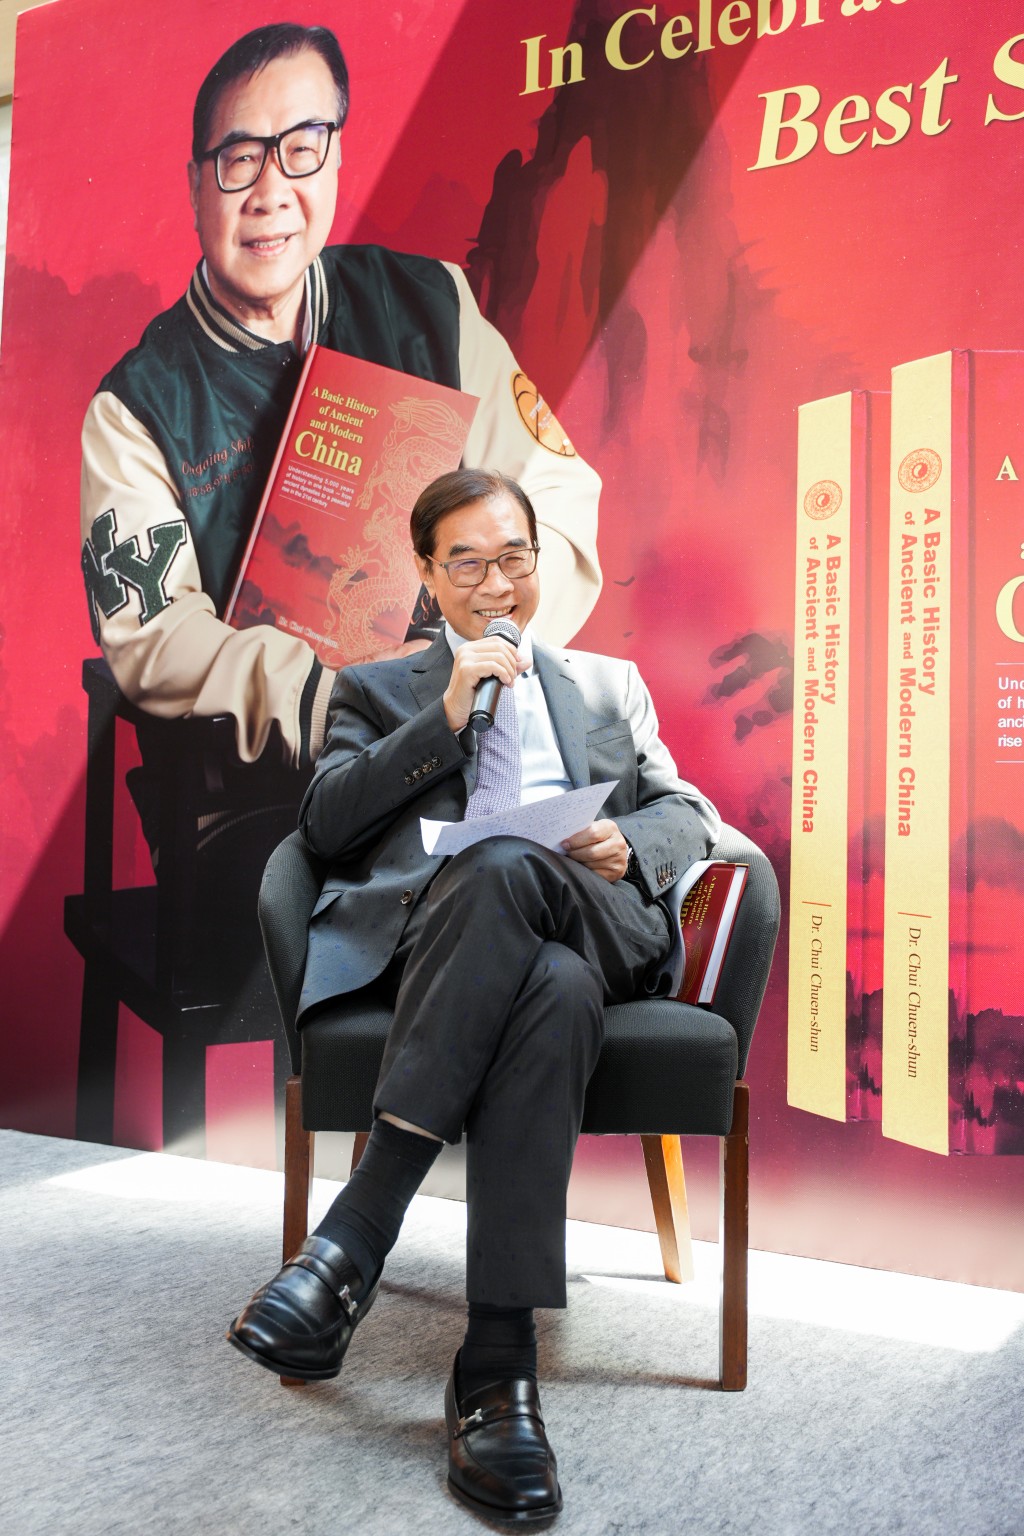 徐傳順於發布會上分享他創作有關古今中國新書的經歷和感受。